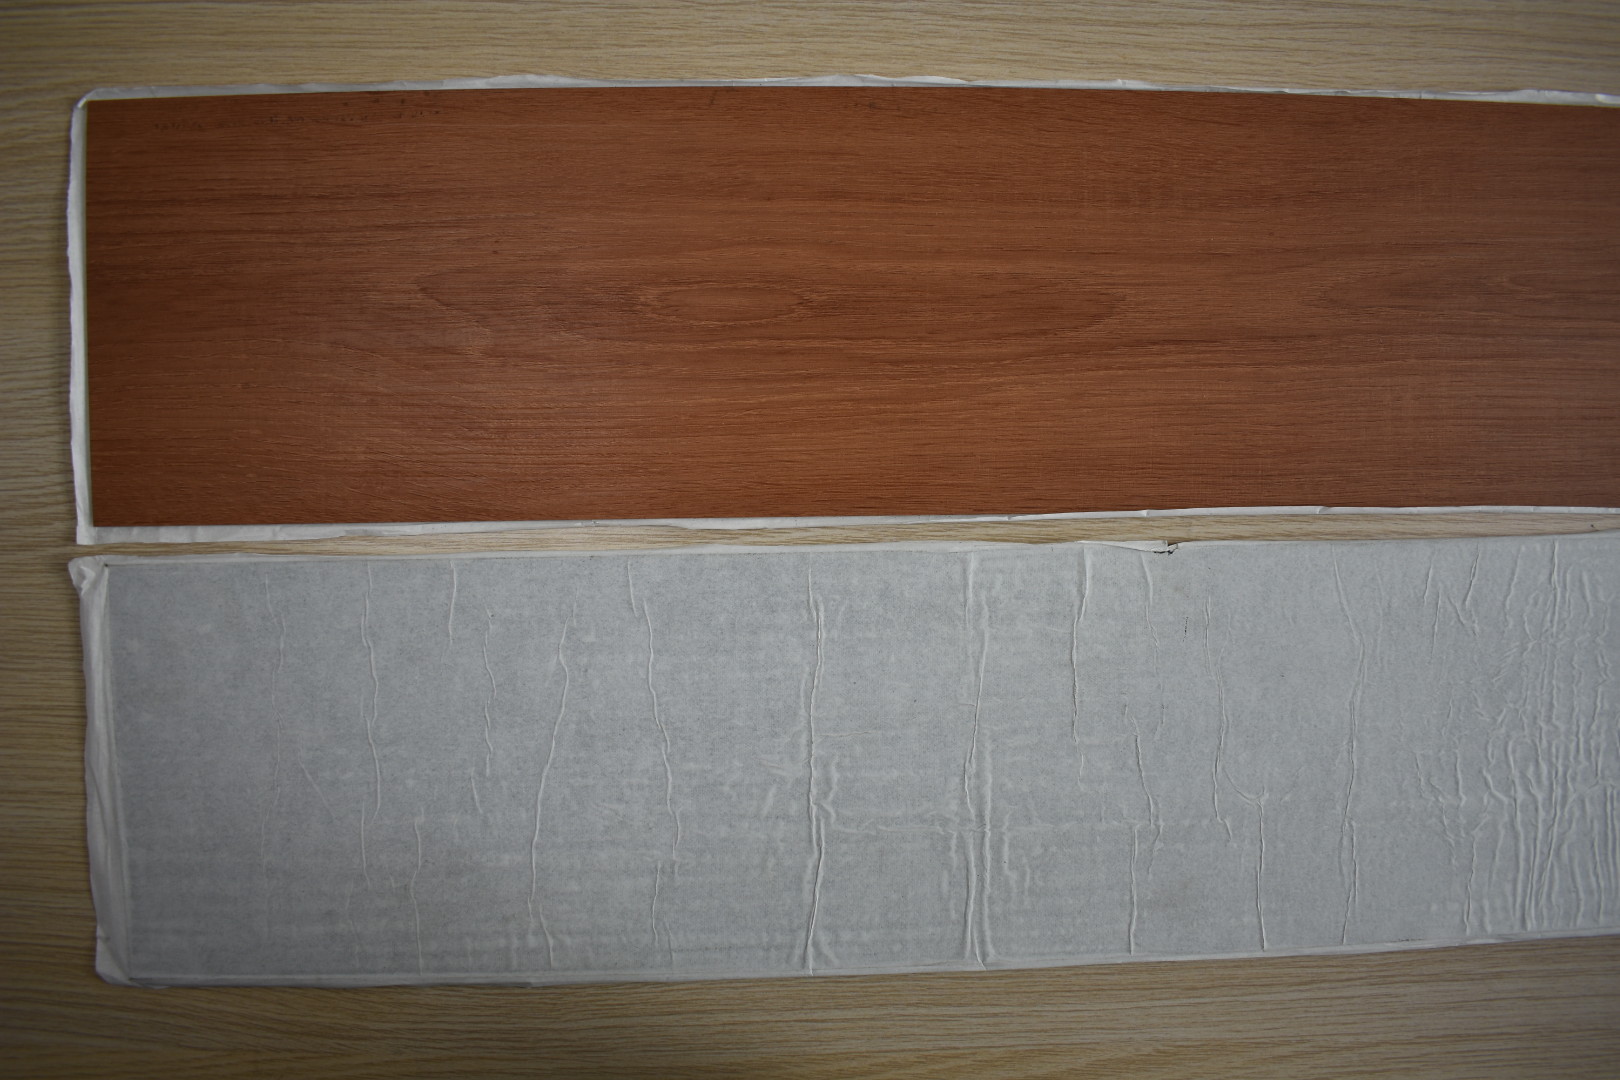 Residential Waterproof Vinyl Flooring , High Gloss Vinyl Wood Plank Flooring